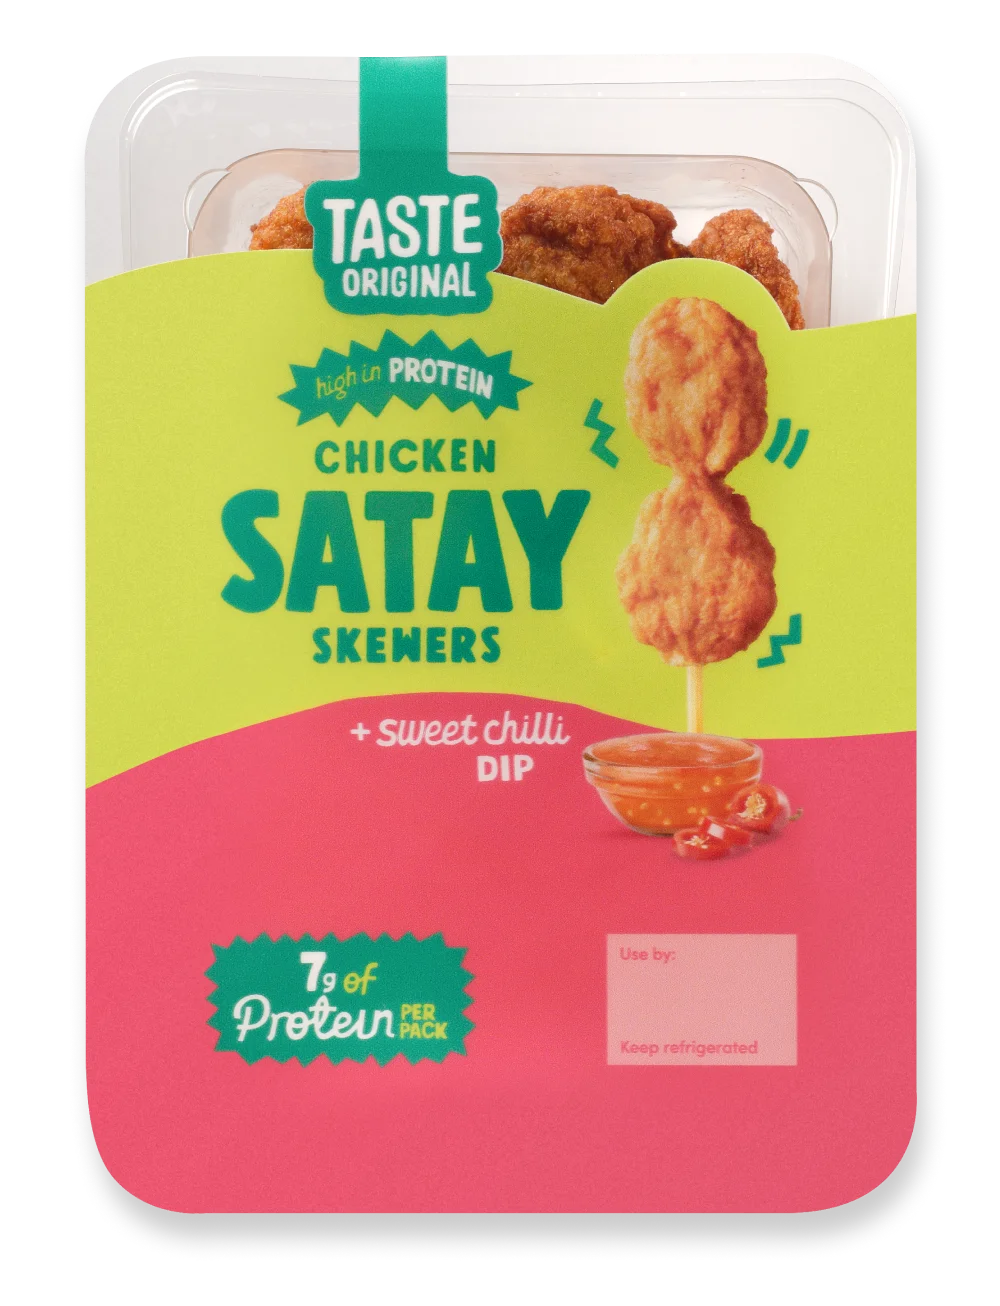 Taste Original Chicken Satay Skewers with Sweet Chilli Dip